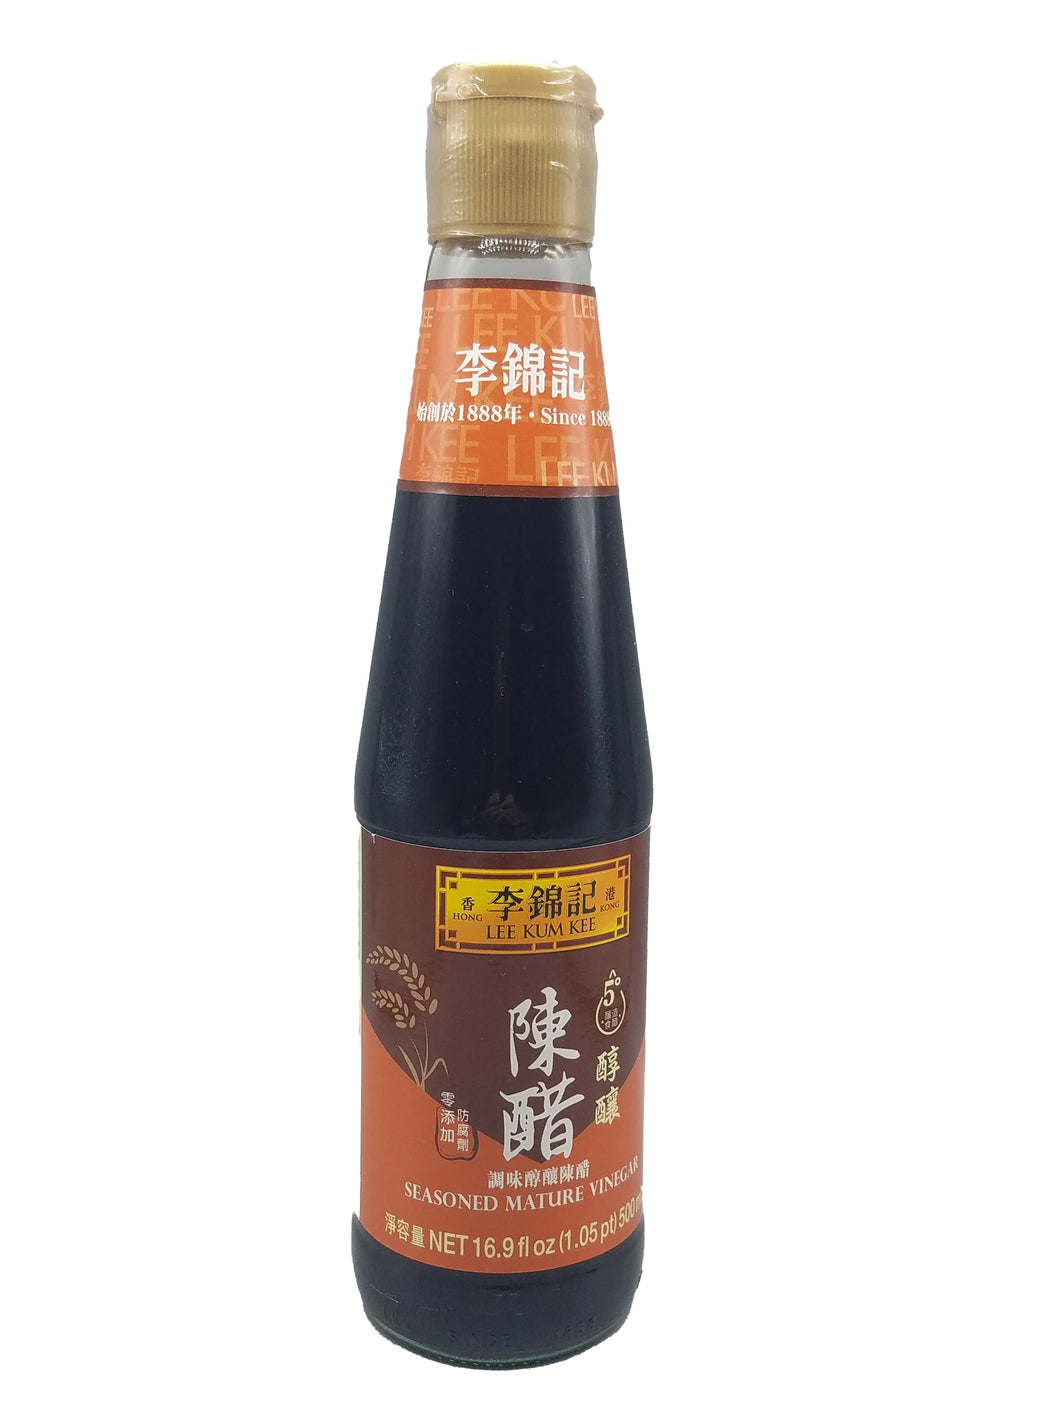 Lee Kum Kee Seasoned Mature Vinegar